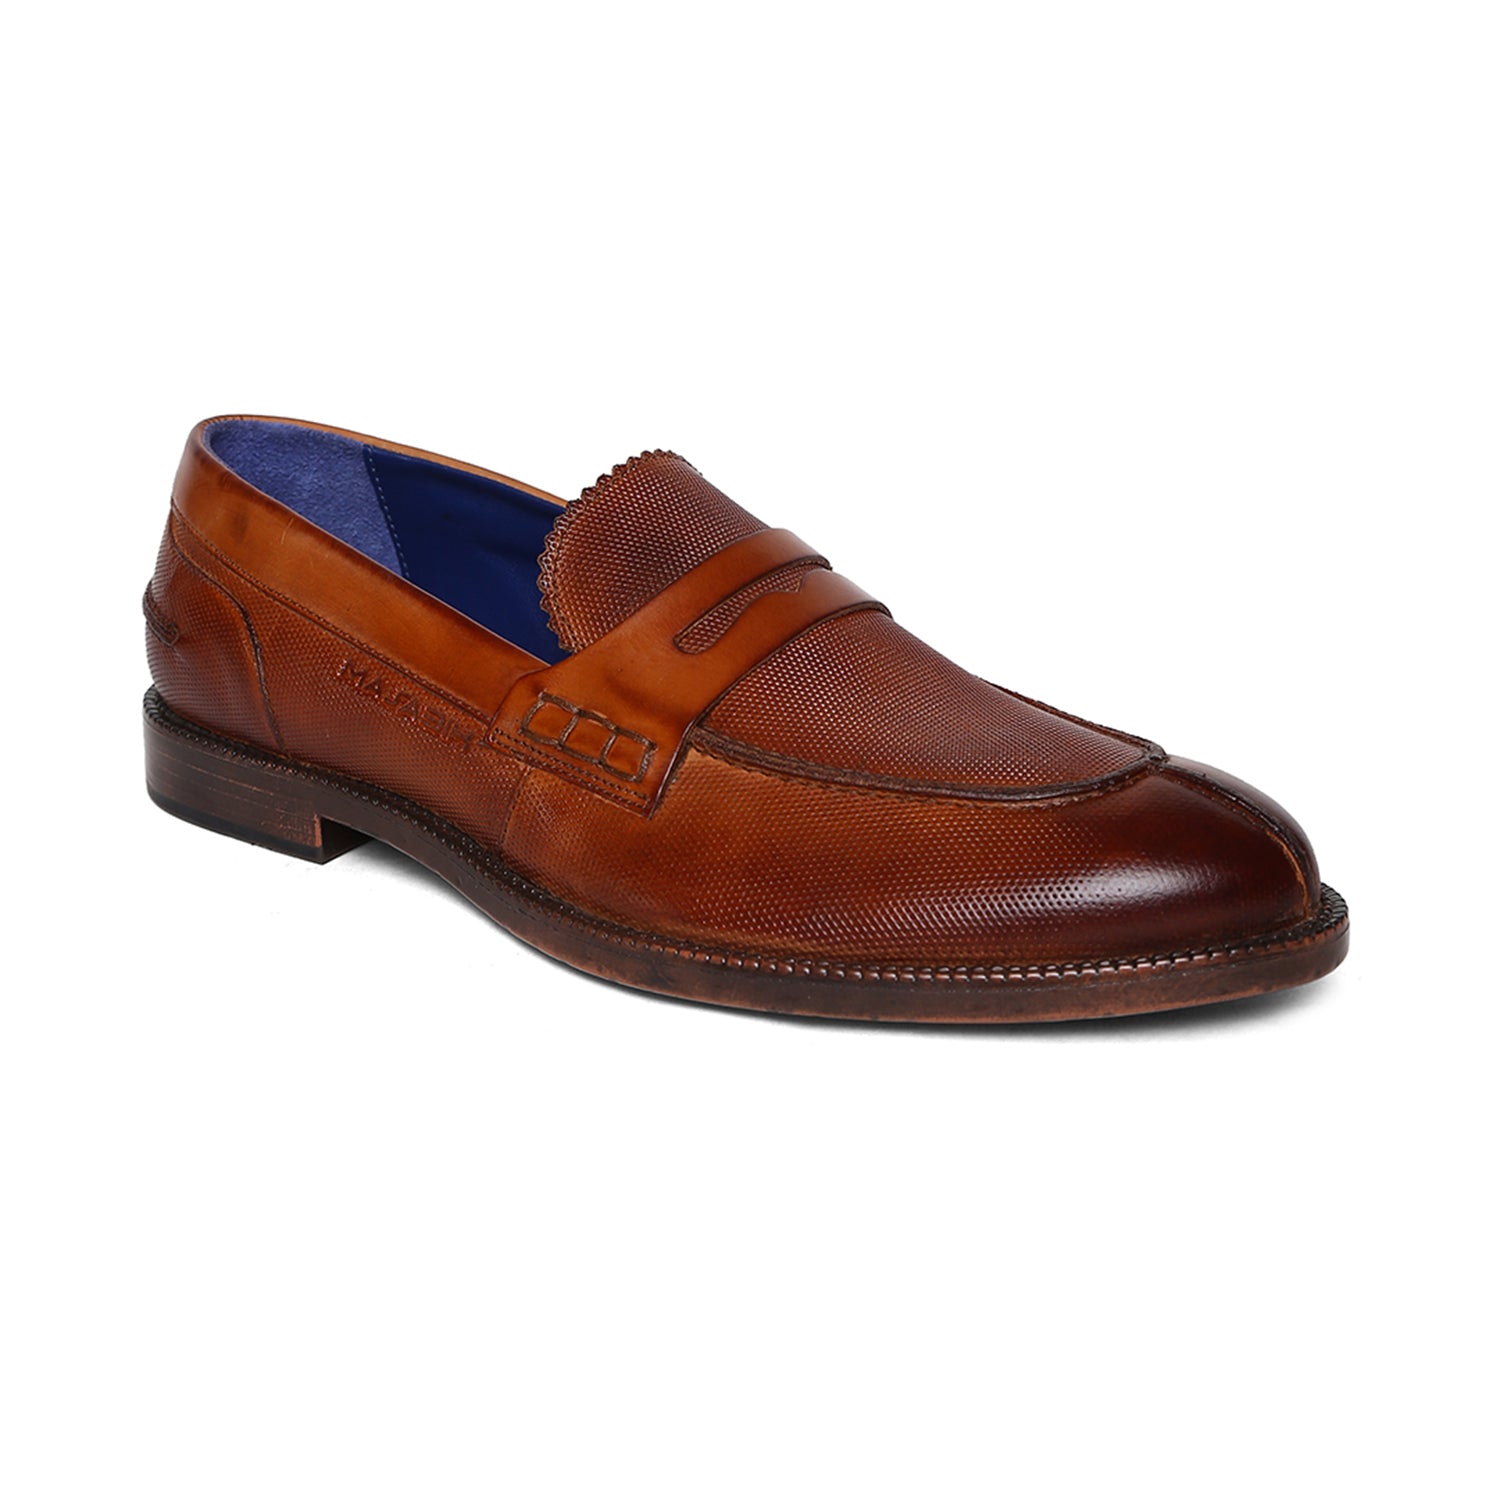 Masabih Genuine Leather Tan Loafer Slipon Shoes for Men